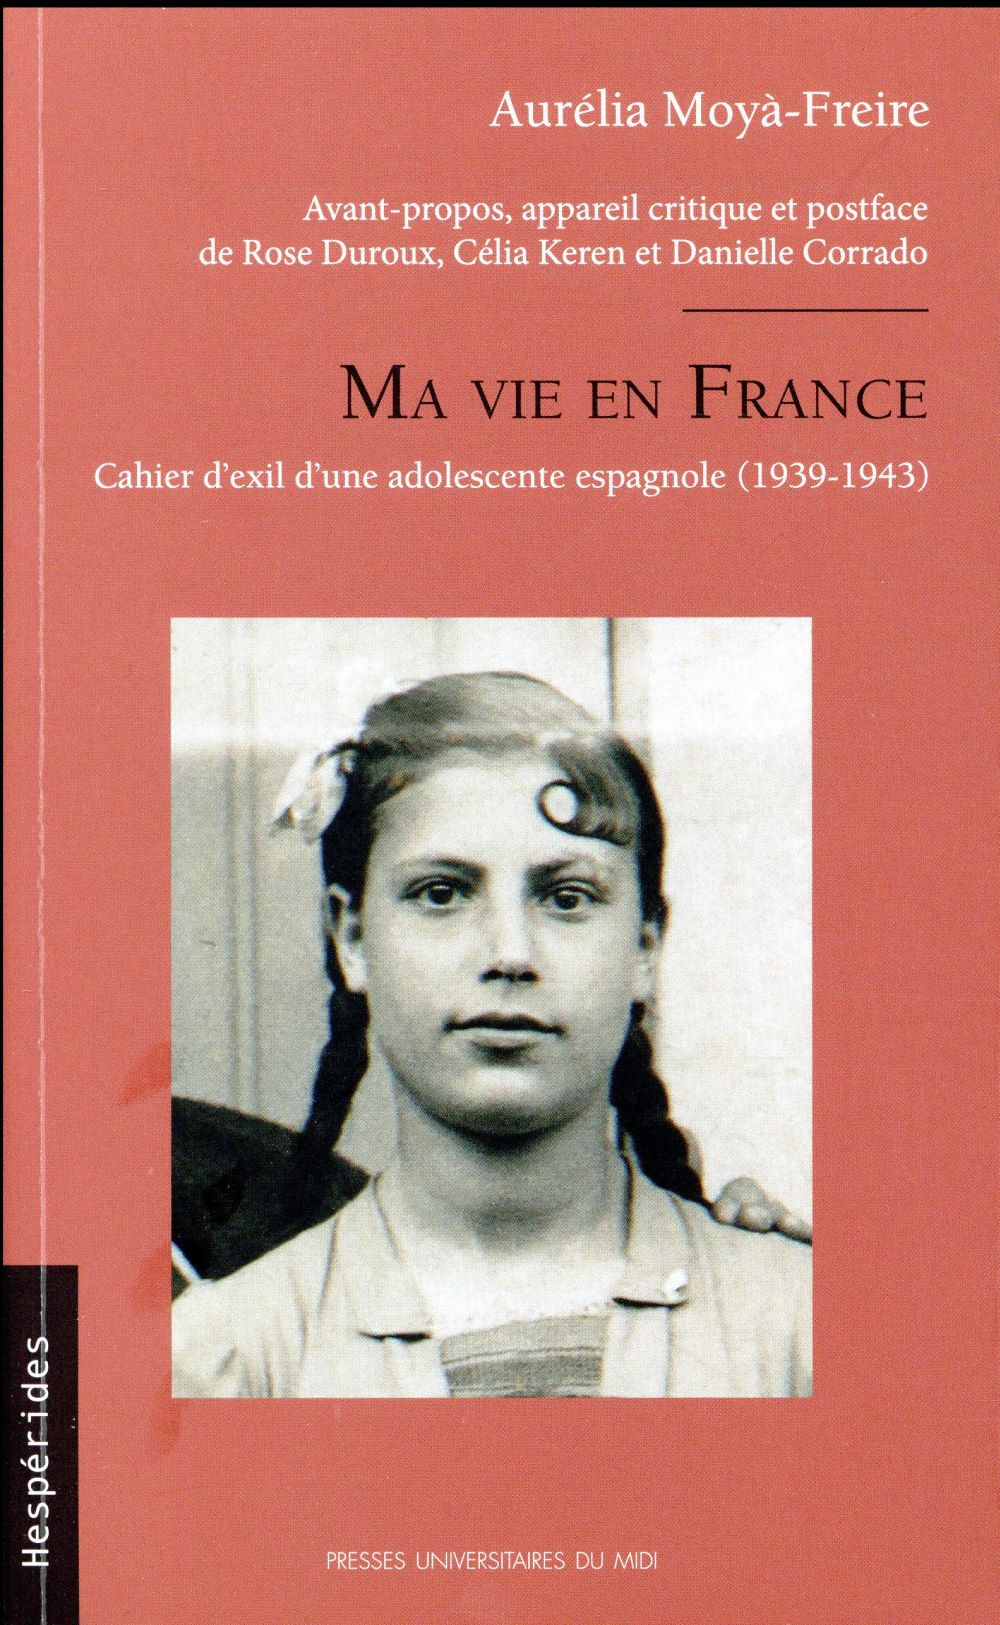 MA VIE EN FRANCE - CAHIER D'EXIL D'UNE ADOLESCENTE ESPAGNOLE (1939-1943)